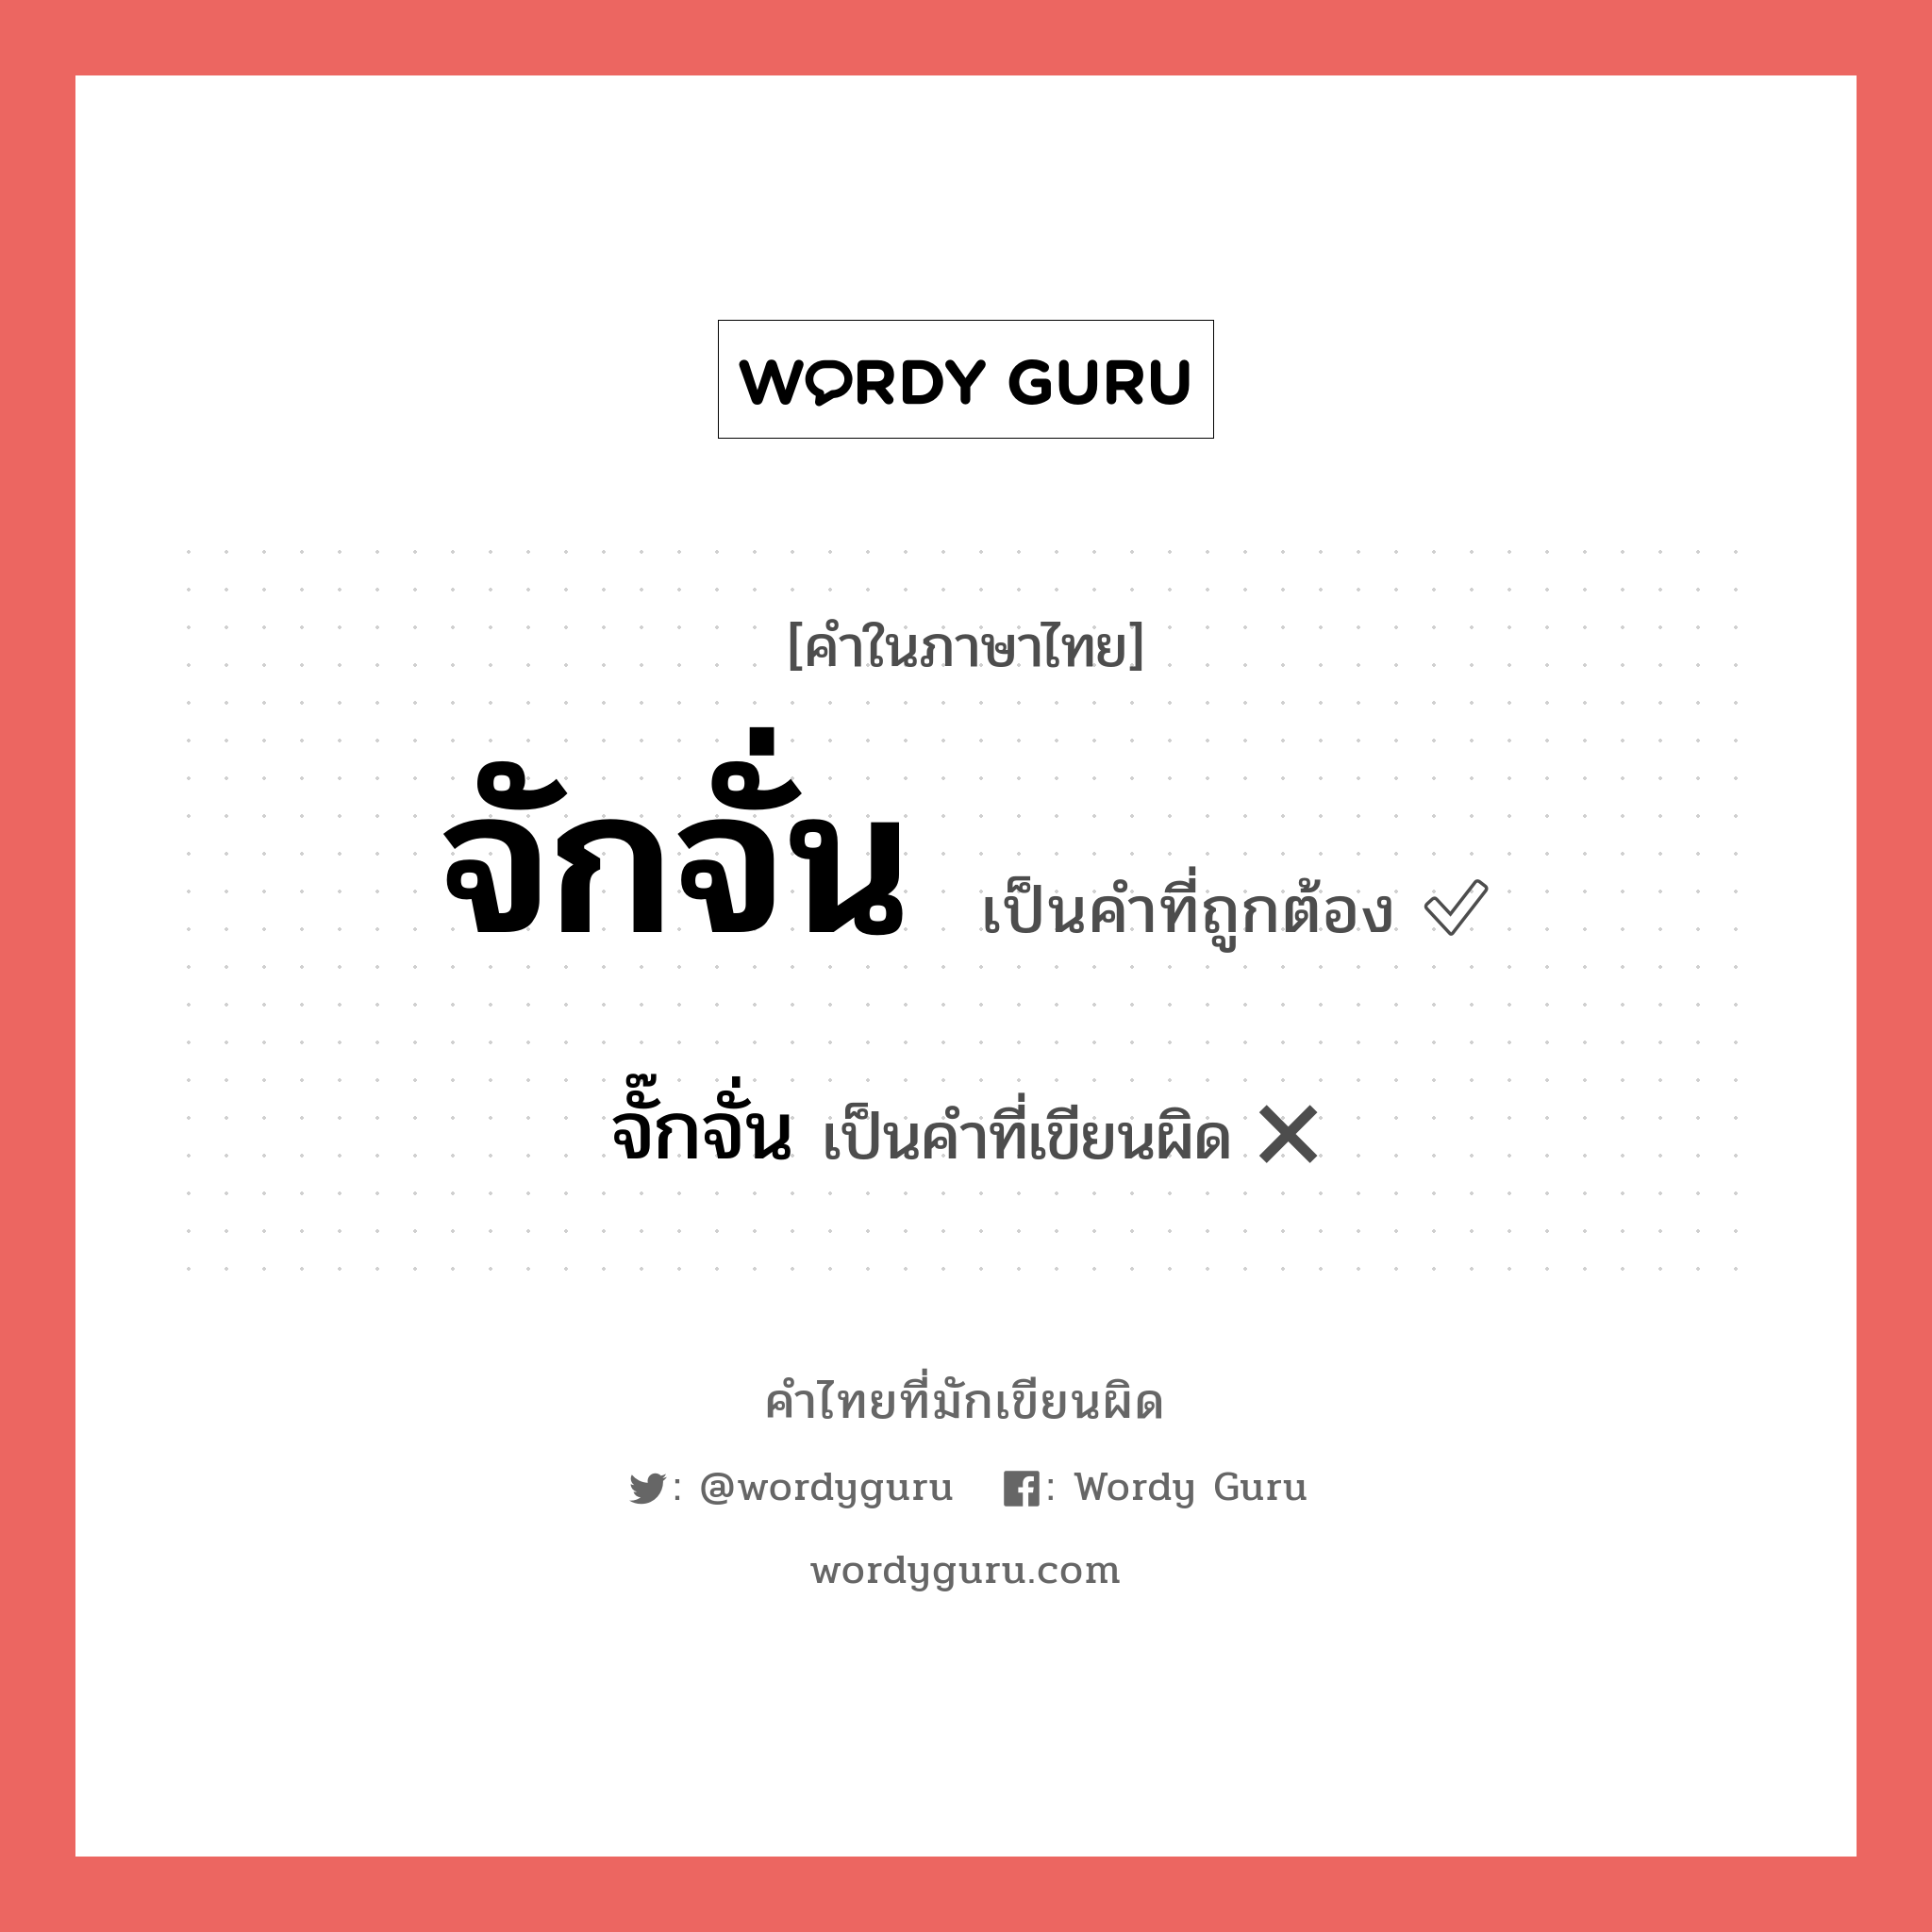 จักจั่น หรือ จั๊กจั่น คำไหนเขียนถูก?, คำในภาษาไทยที่มักเขียนผิด จักจั่น คำที่ผิด ❌ จั๊กจั่น